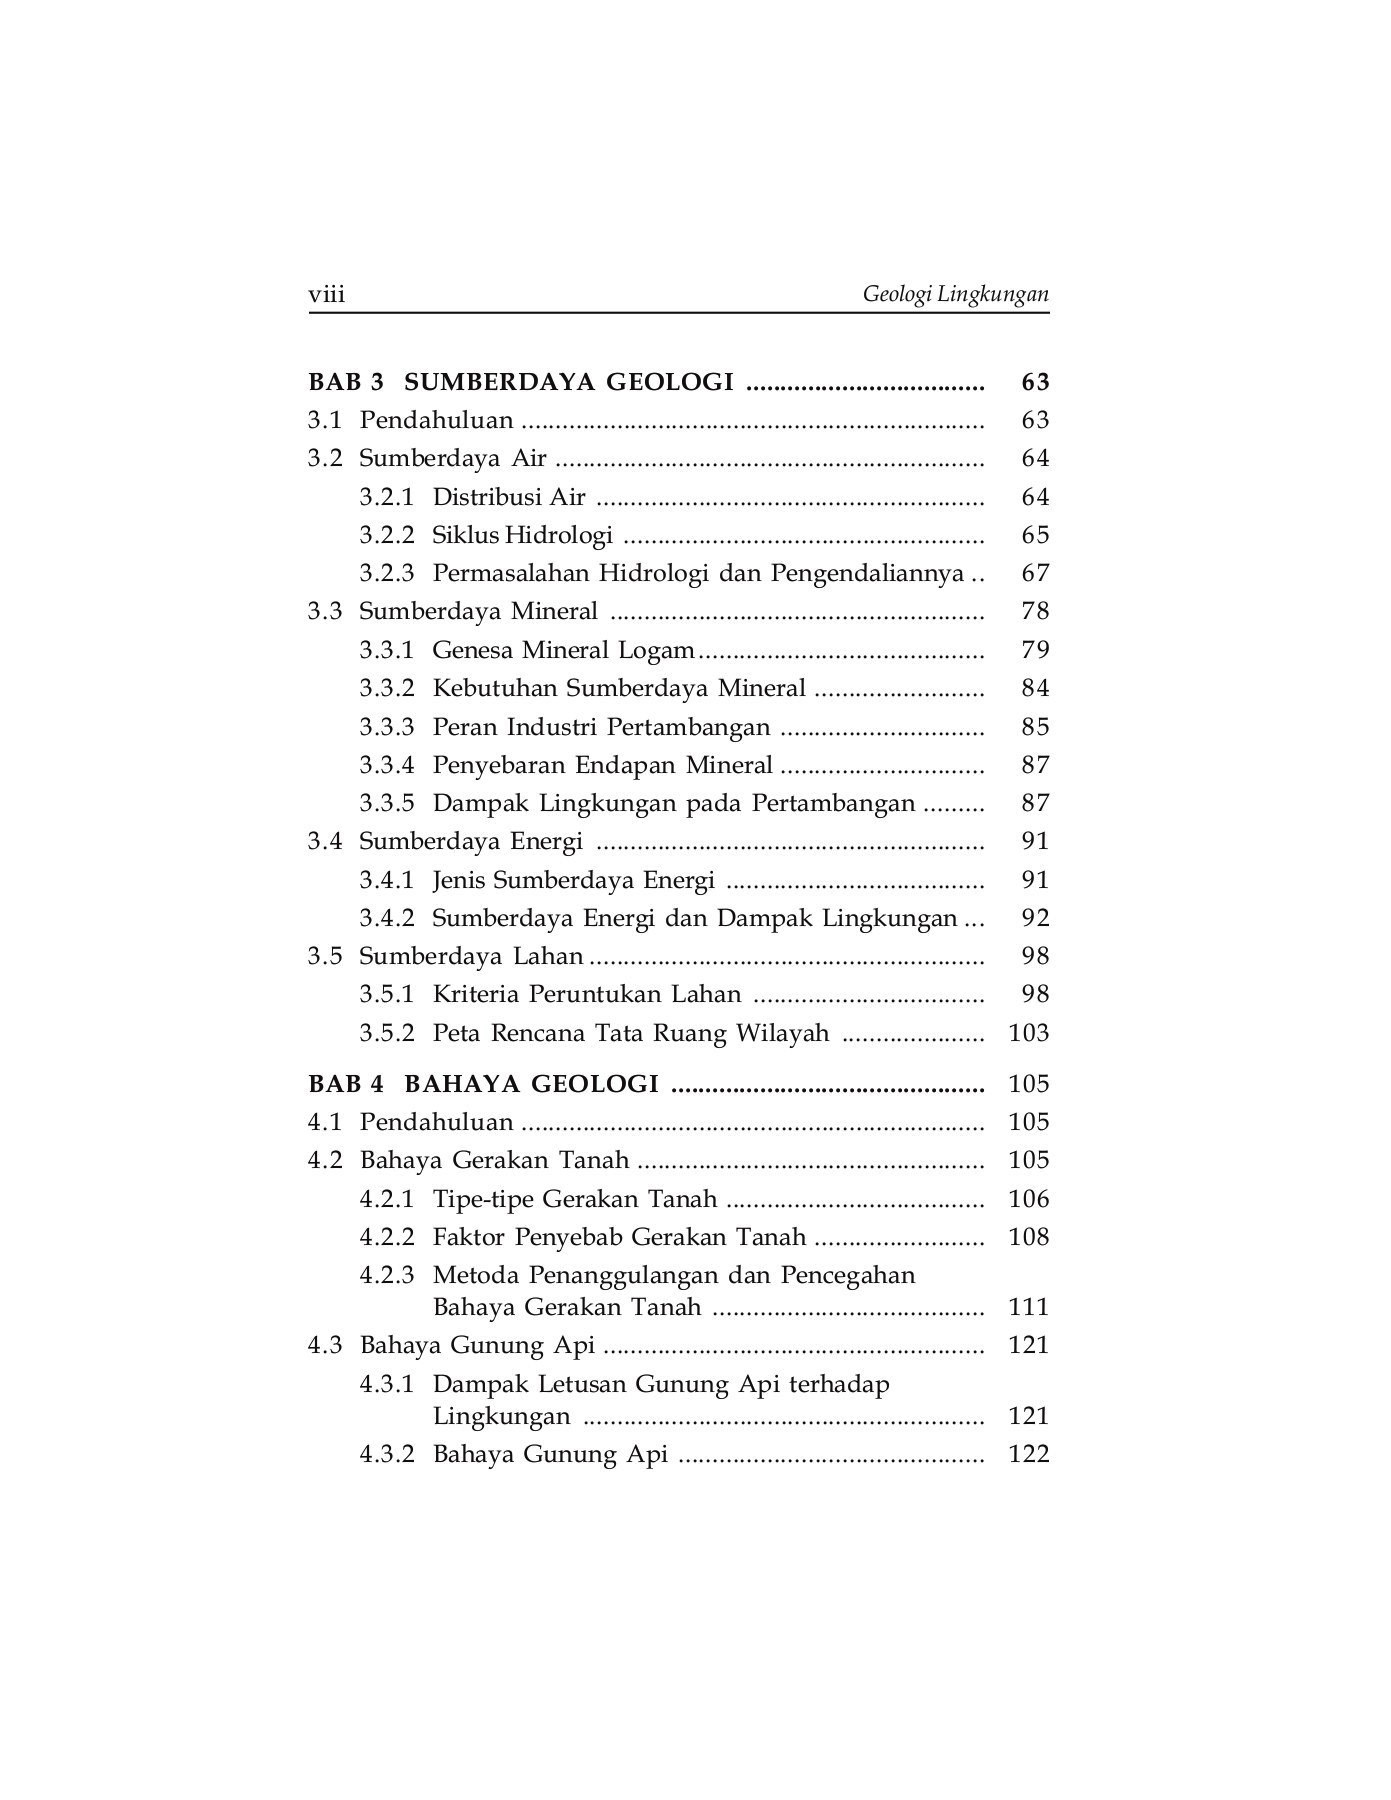 Daftar Isi Buku Geologi Lingkungan Karya Djauhari Noor